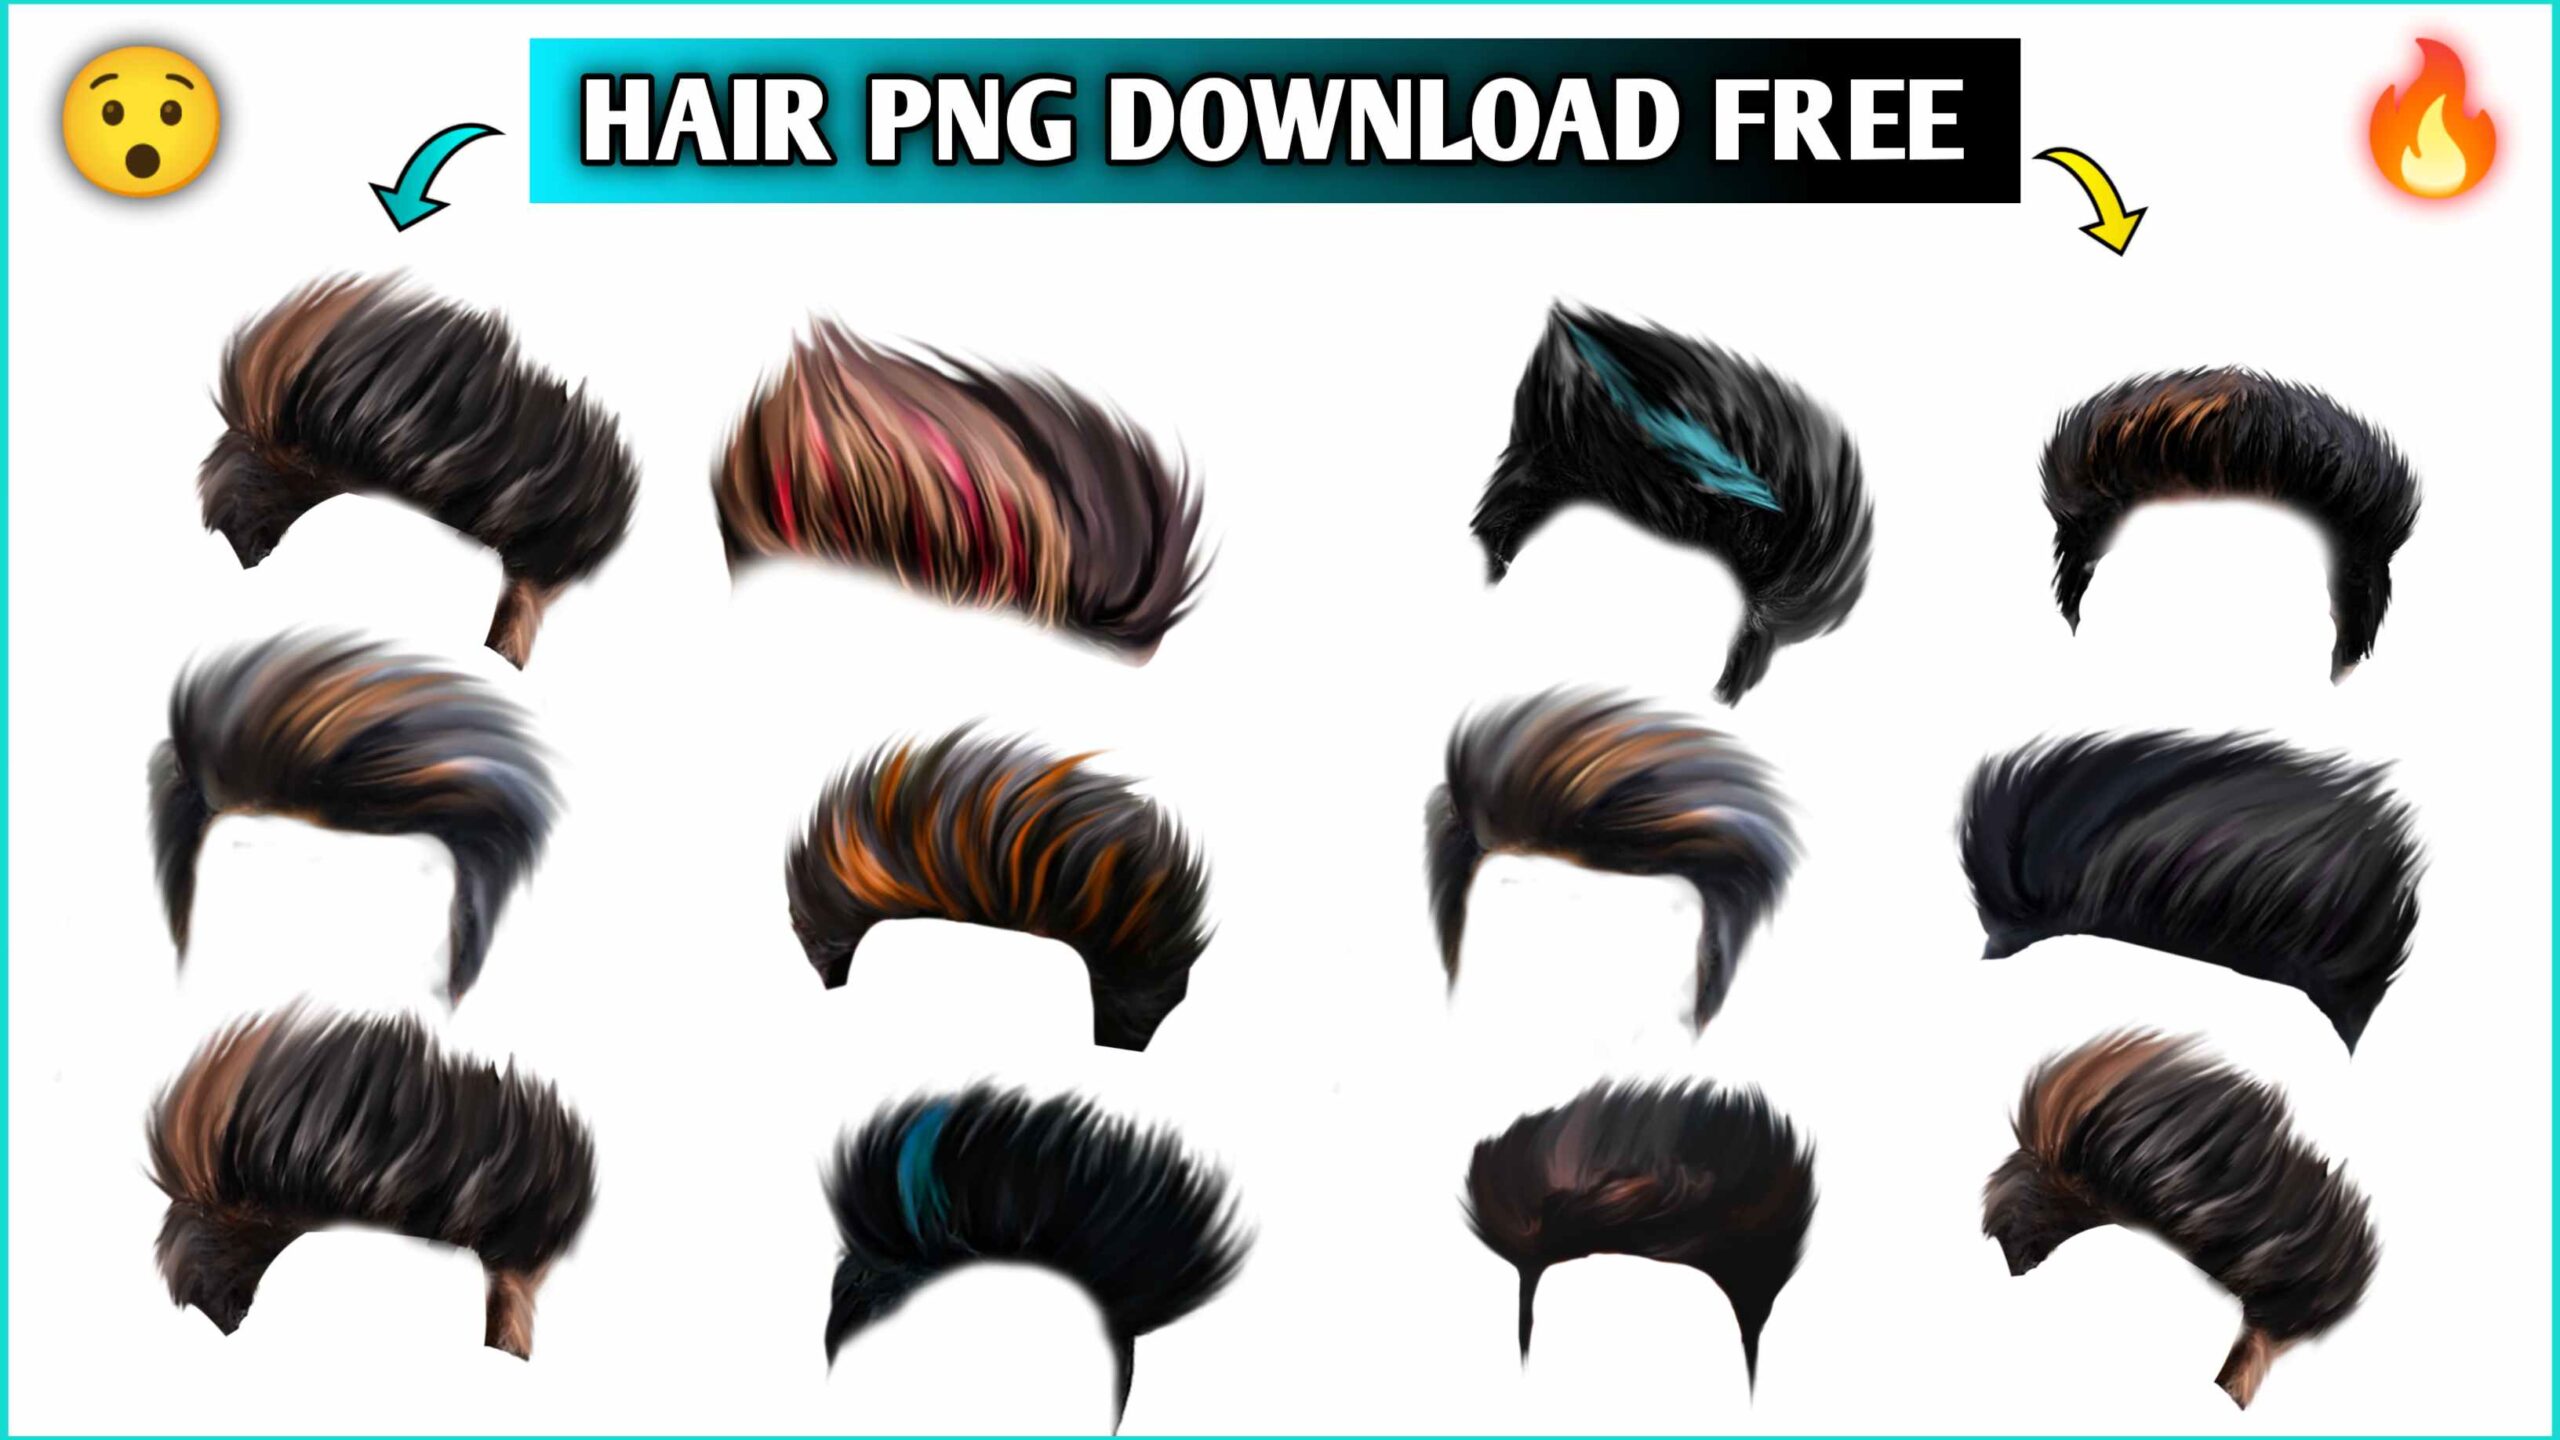 Hair Png Download Picsart CB Hair Png Download Free - MUNAWAR EDITS